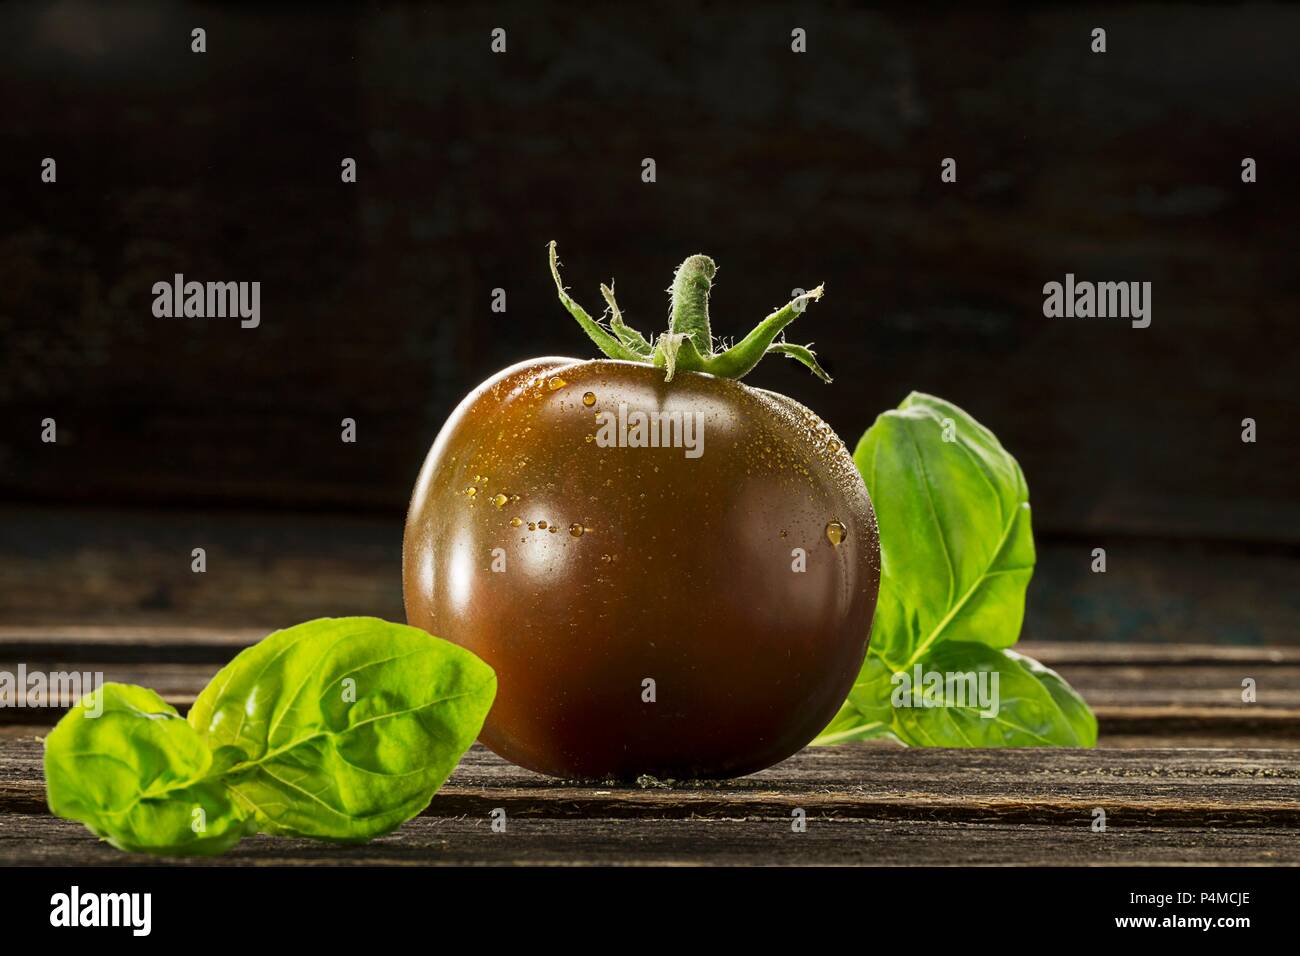 Kumato tomato and basil Stock Photo